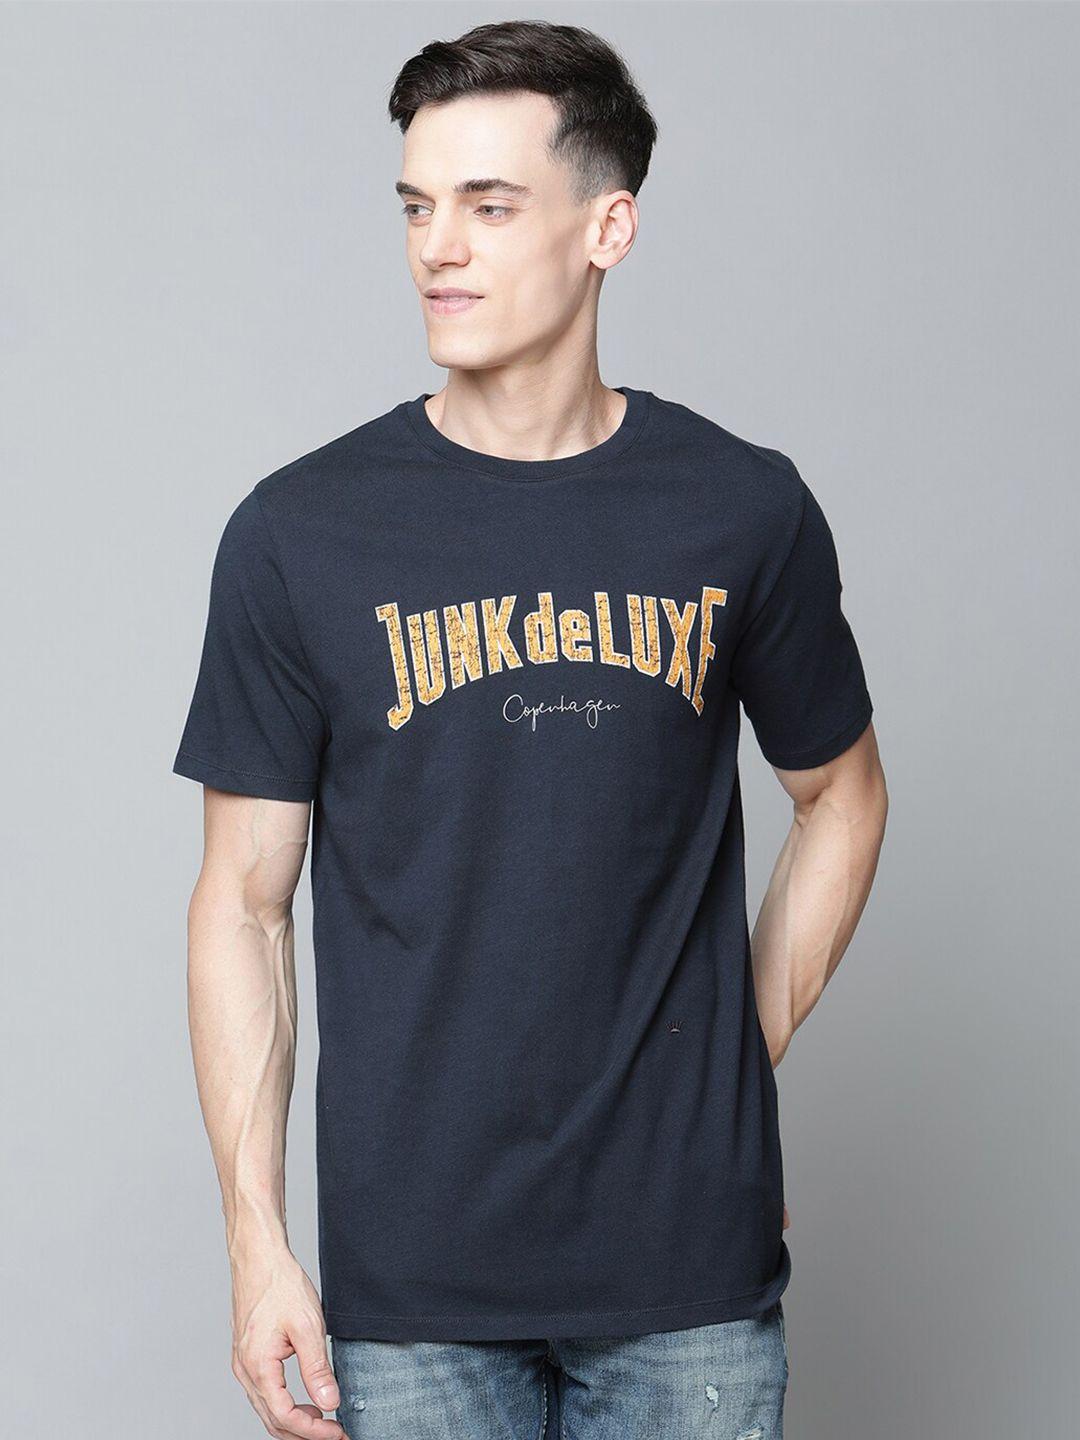 junk-de-luxe-men-navy-blue-brand-logo-printed-organic-cotton-t-shirt